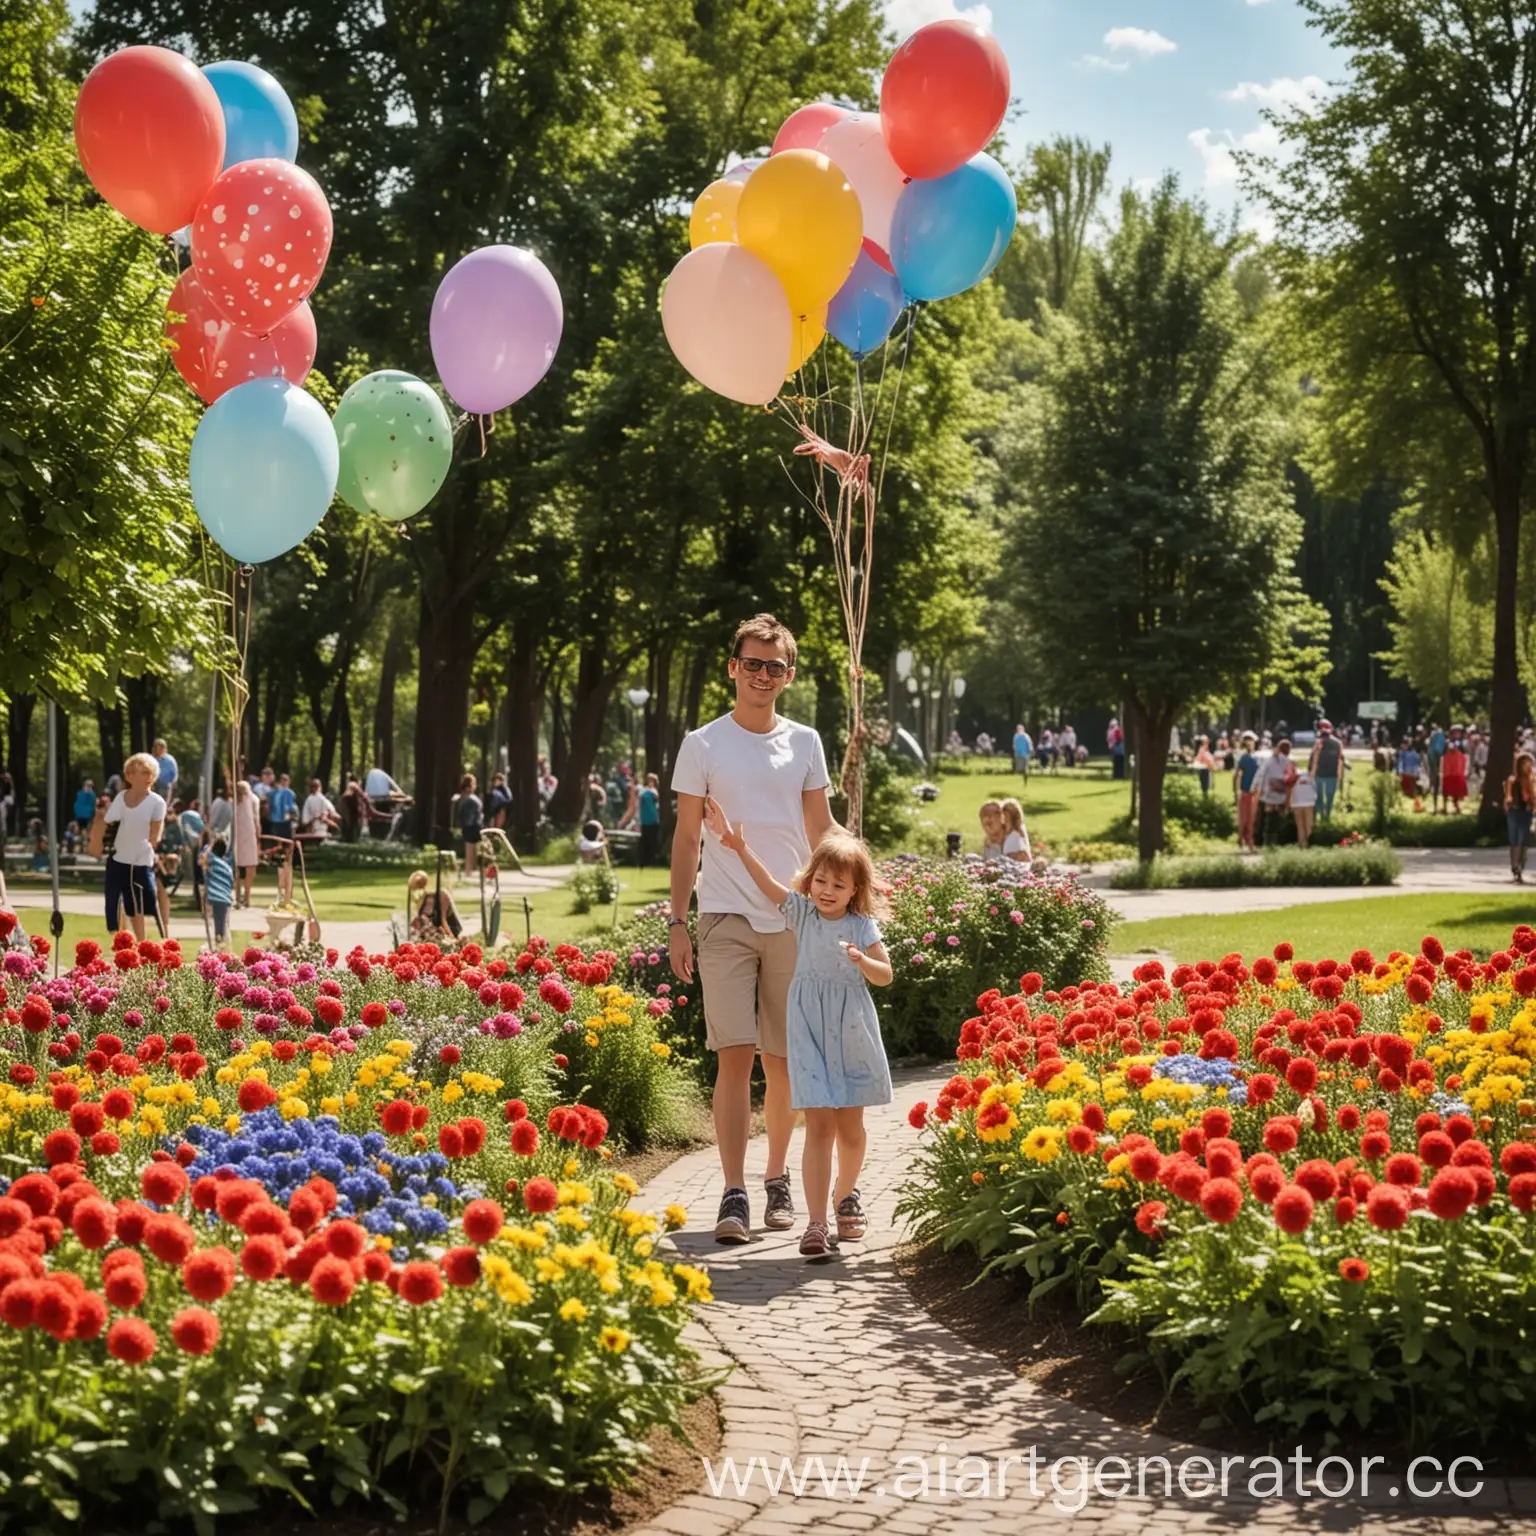 Парк, солнечный день, благоустройство, клумбы, родители счастливые, воздушные шарики, россия, дети веселые!